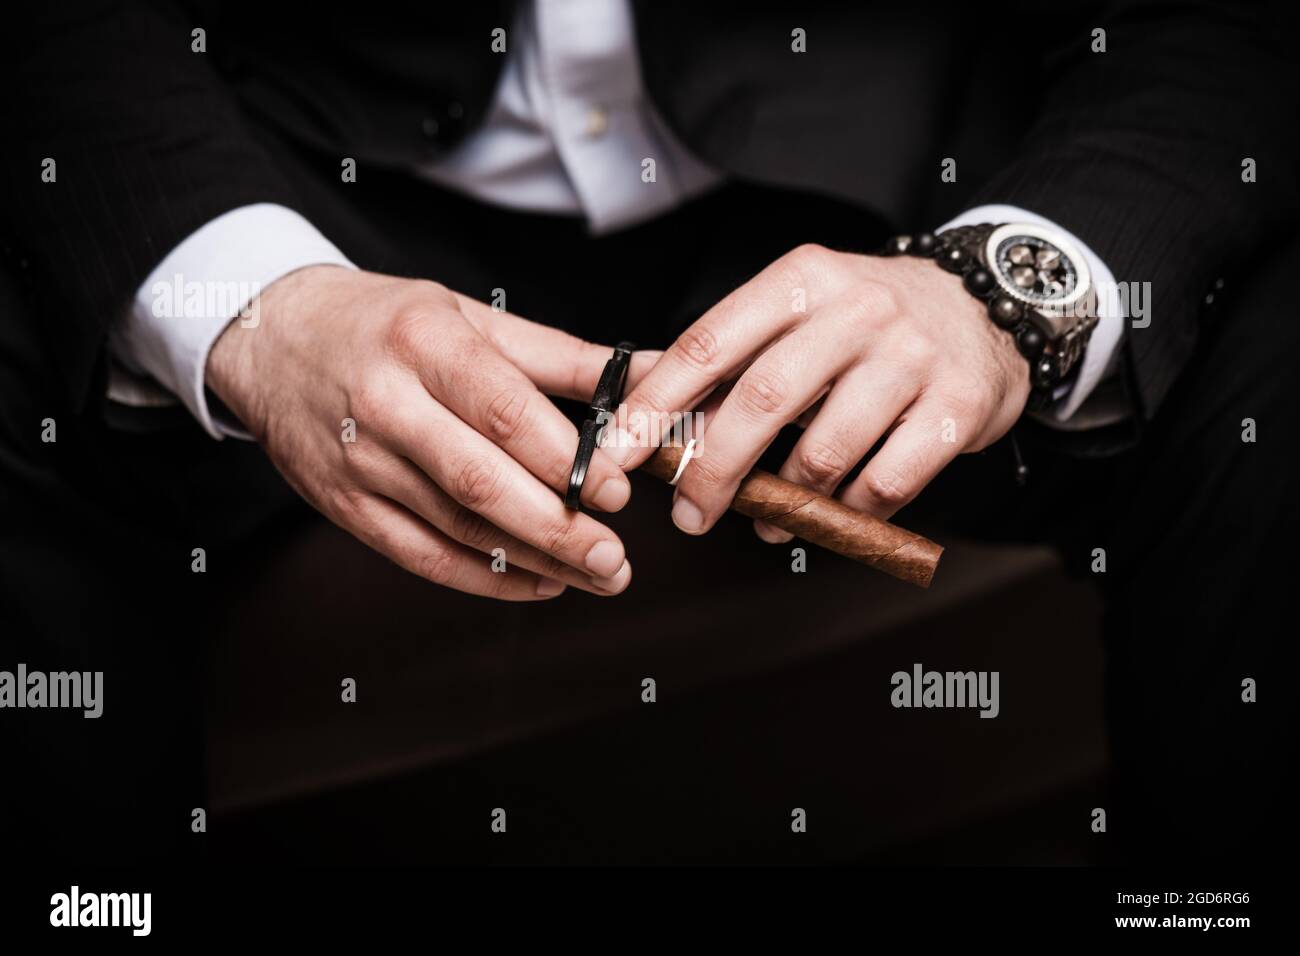 elegant man wearing black suit and white shirt cut Cuban cigar Stock Photo